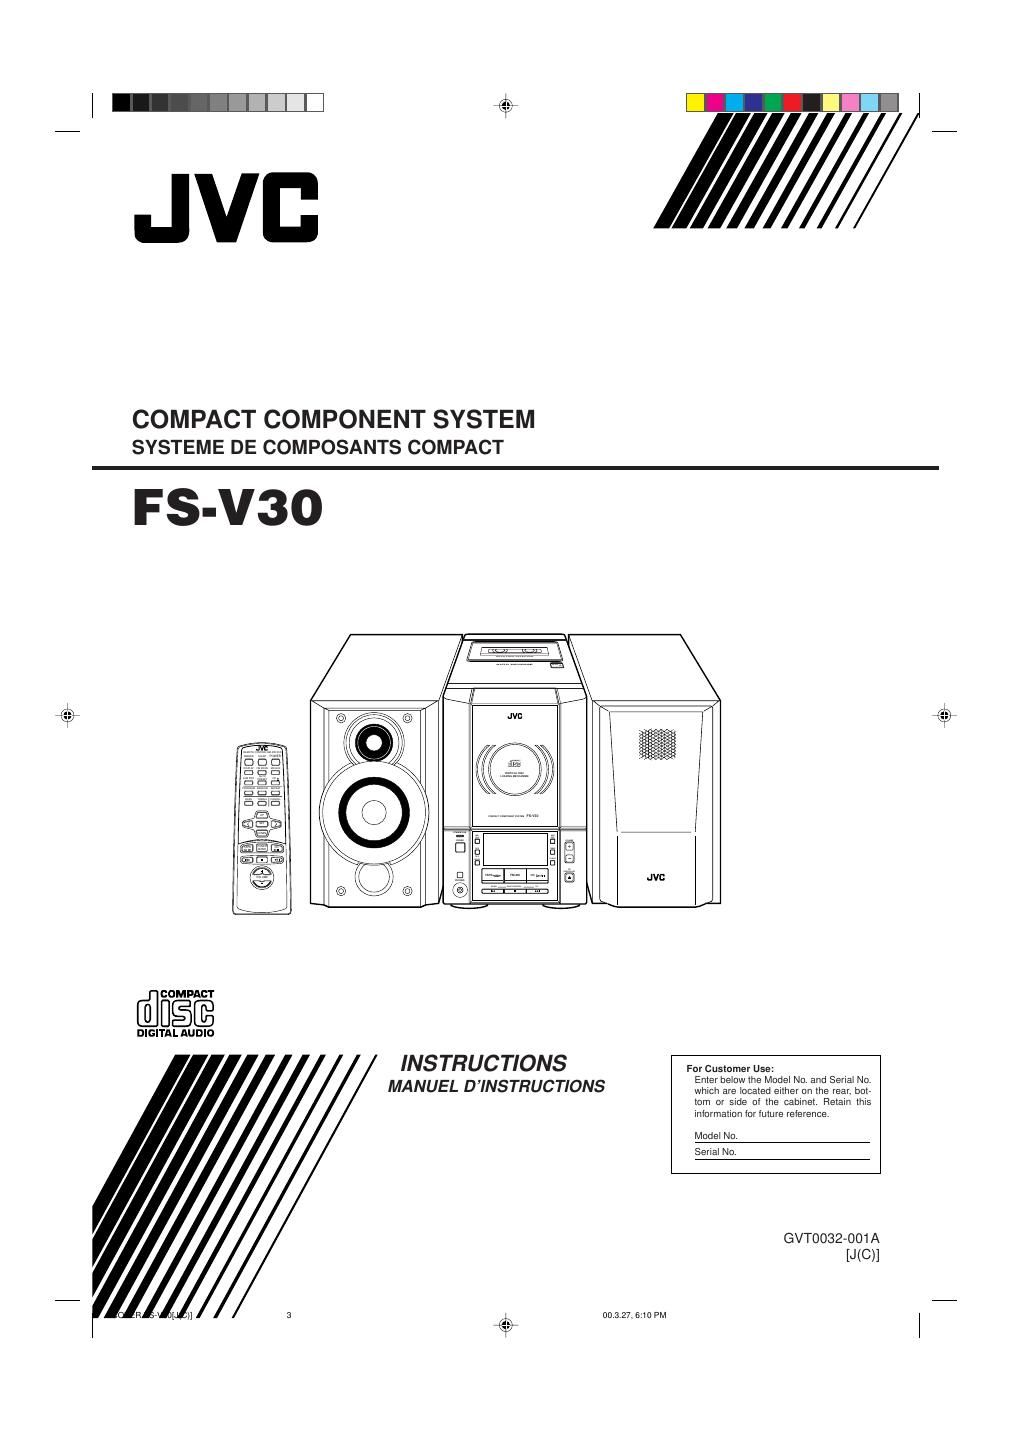 Jvc FSV 30 Owners Manual